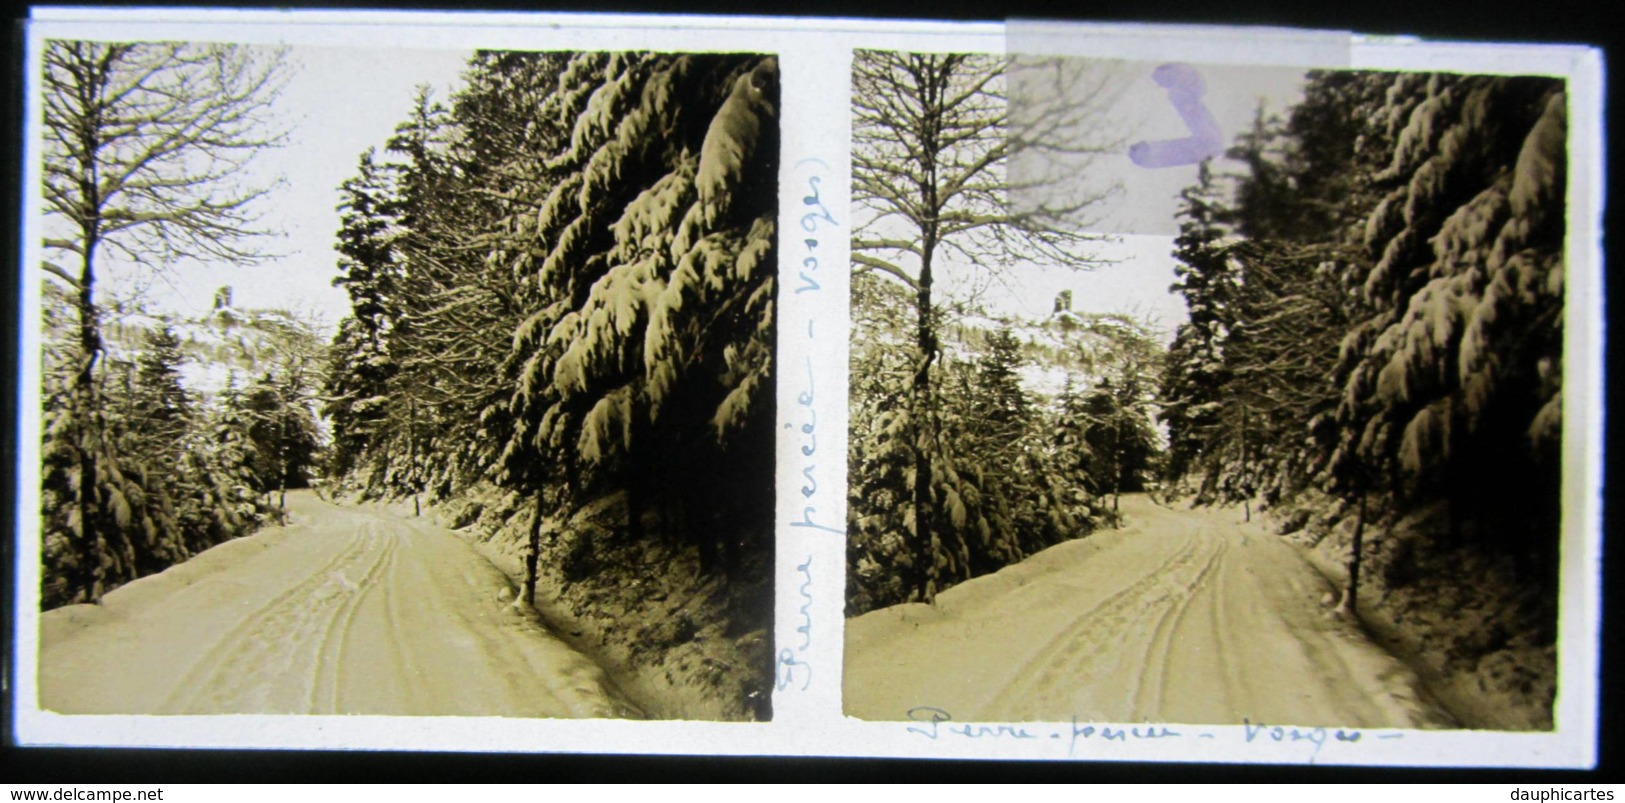 Route De PIERRE - PERCEE Sous La Neige, Vosges, 1927. Plaque De Verre Stéréoscopique. Positif - Plaques De Verre